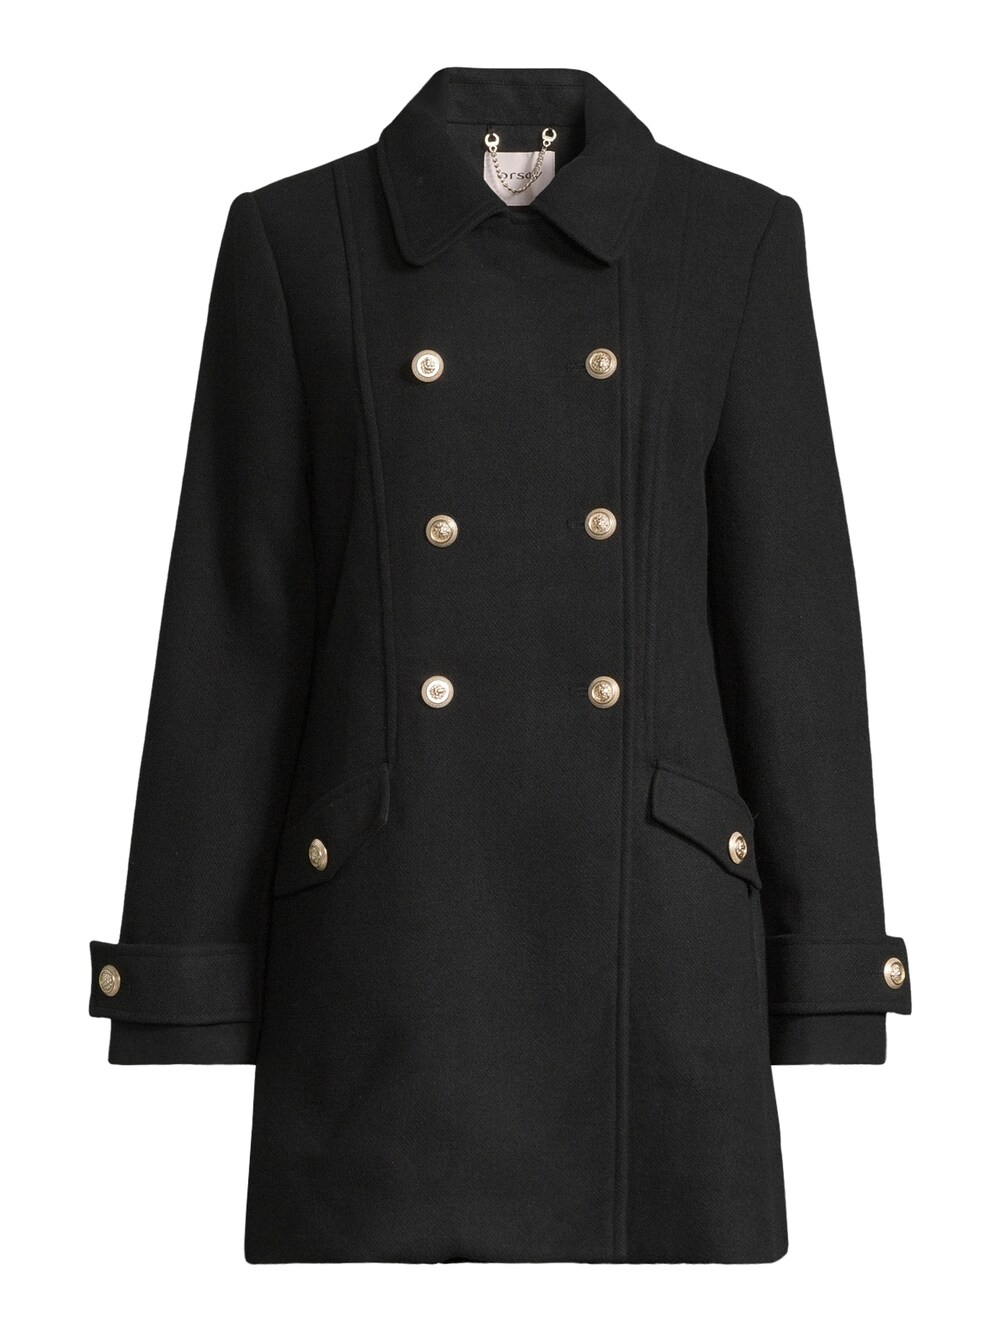 Межсезонное пальто Orsay Clashmil, черный межсезонное пальто orsay светло серый